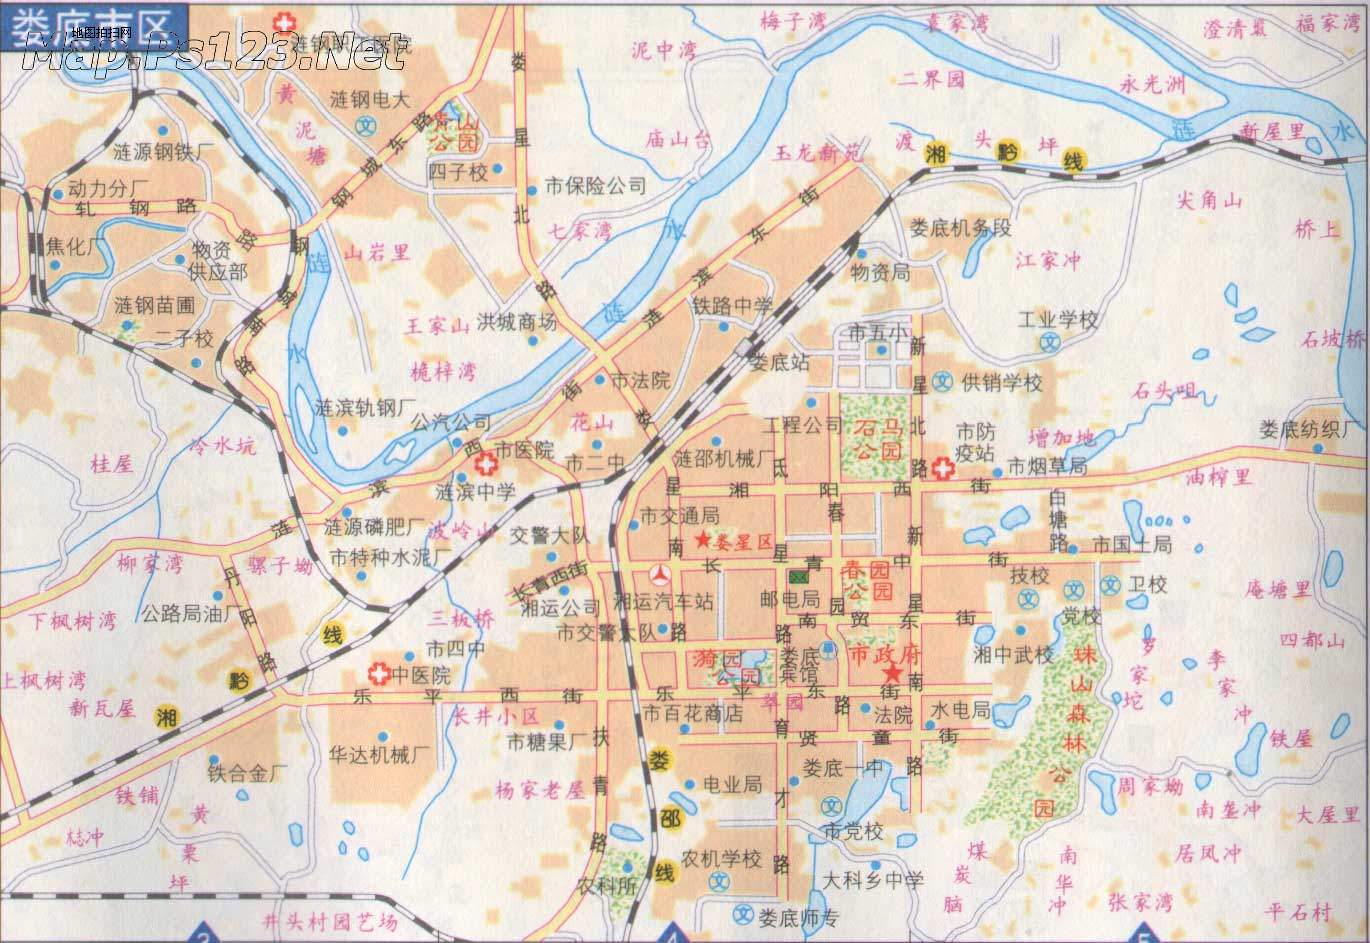 地图 湖南 娄底市  娄底市区地图  栏目导航: 长沙市  张家界